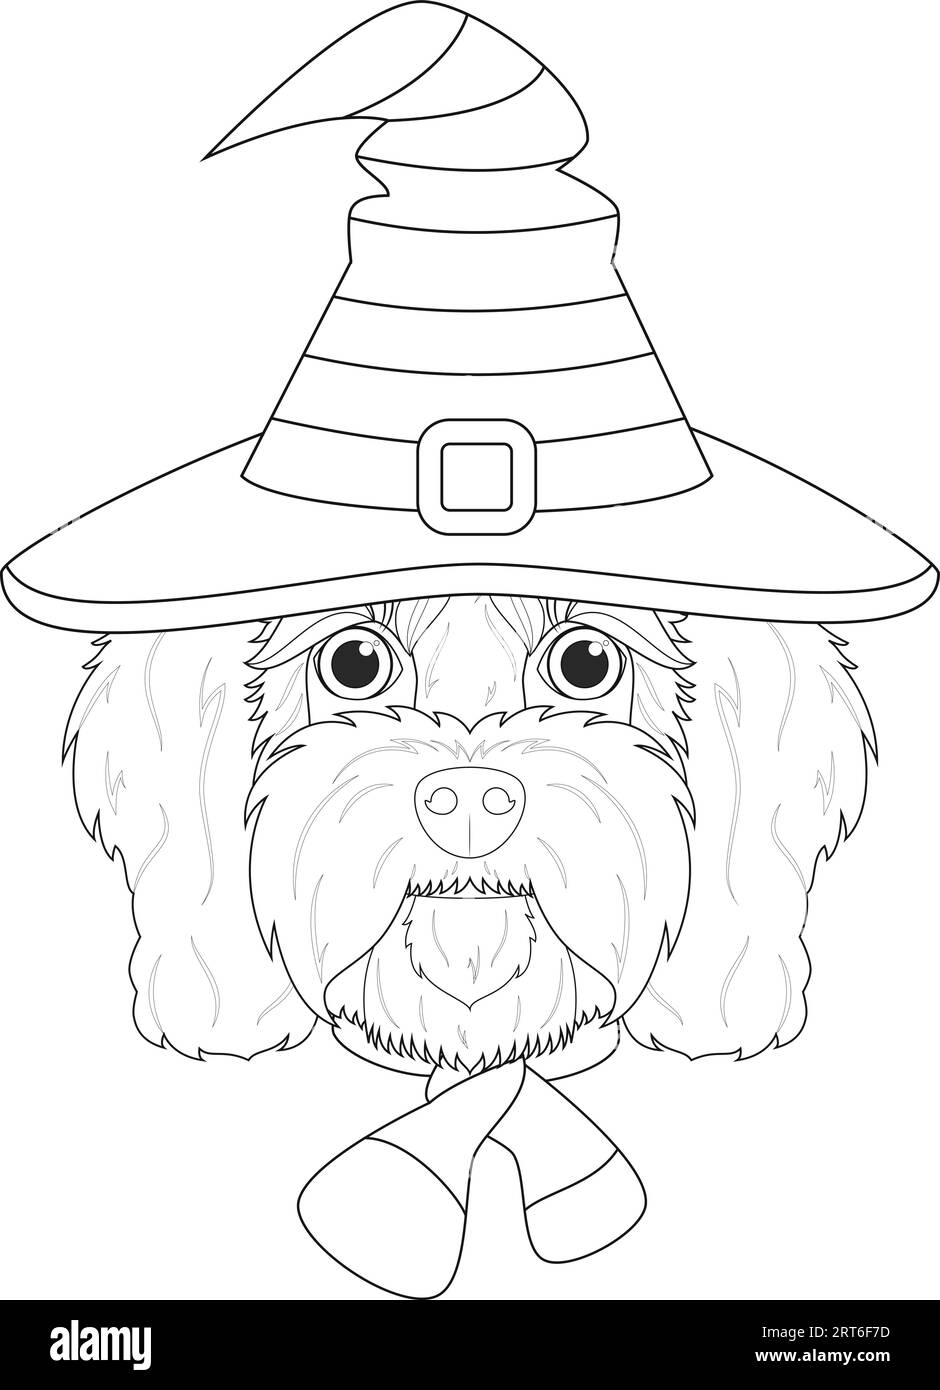 Biglietto d'auguri di Halloween da colorare. Cavoodle cane vestito da strega con cappello nero e arancione e sciarpa viola e nera Illustrazione Vettoriale